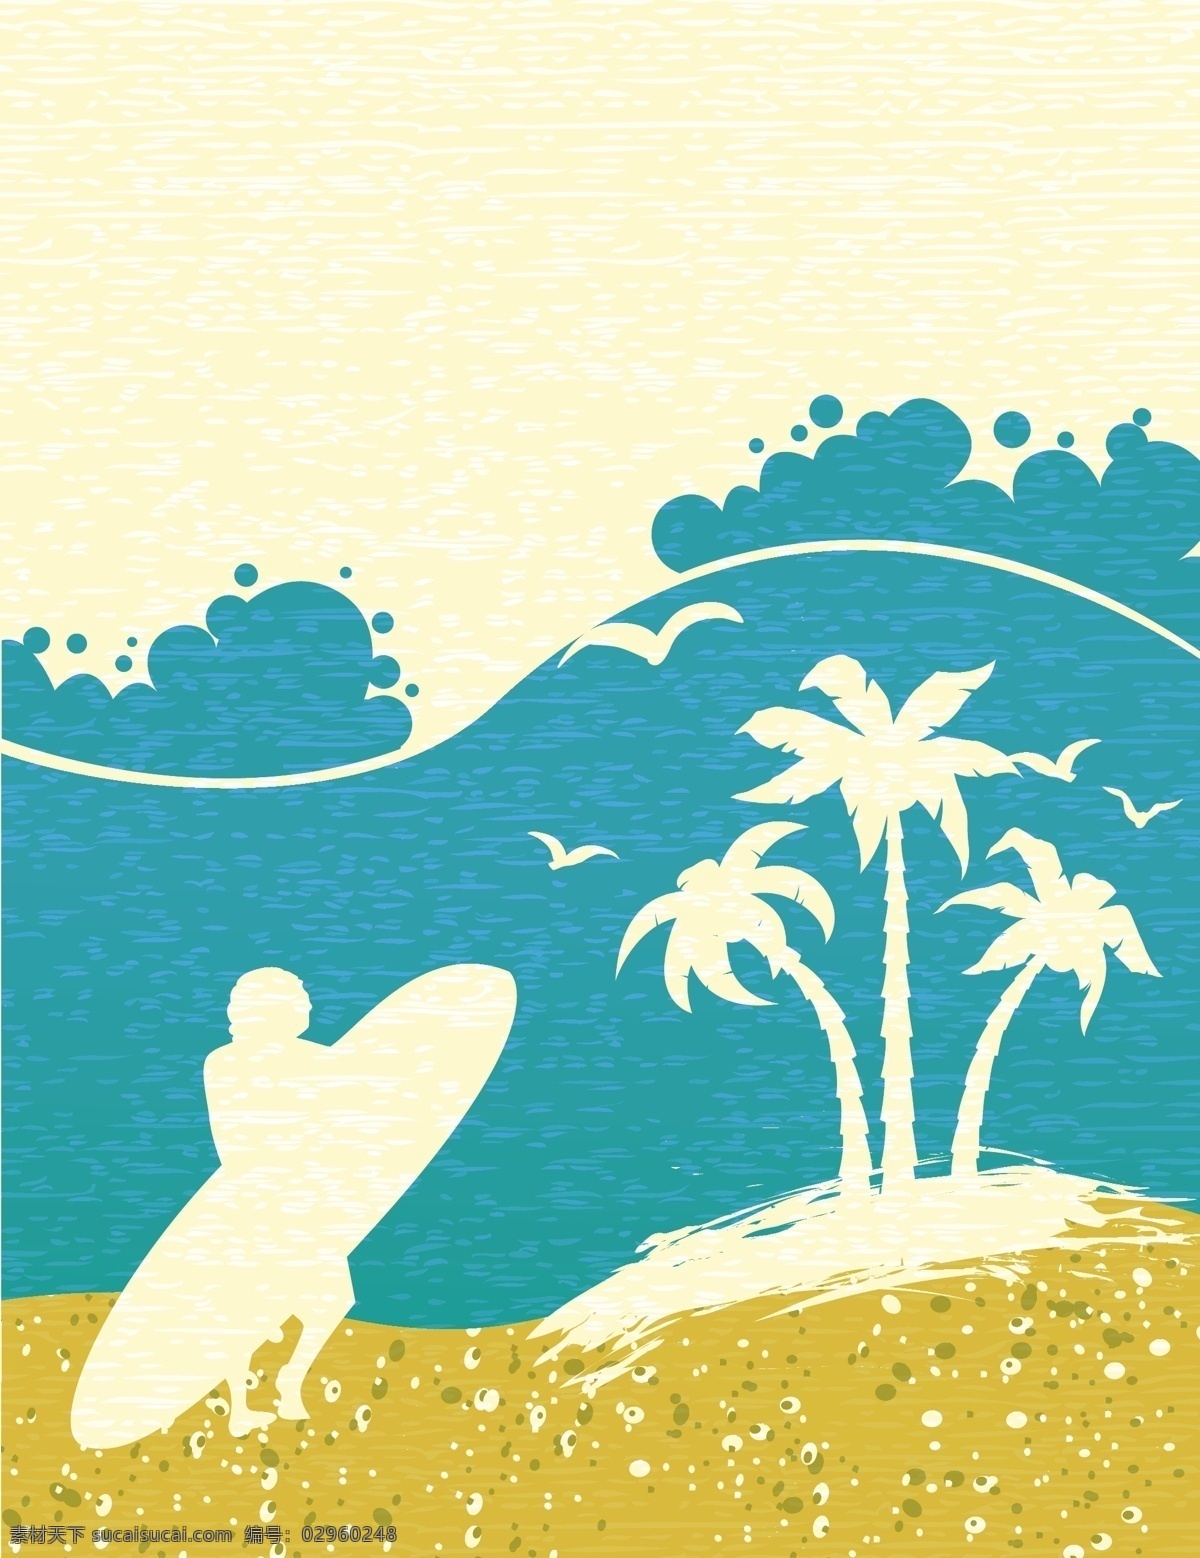 卡通 夏日 海边 背景 夏日海边 椰子树 海浪 人 冲浪板 沙滩 夏日素材 背景素材 其他模板 矢量素材 底纹边框 白色